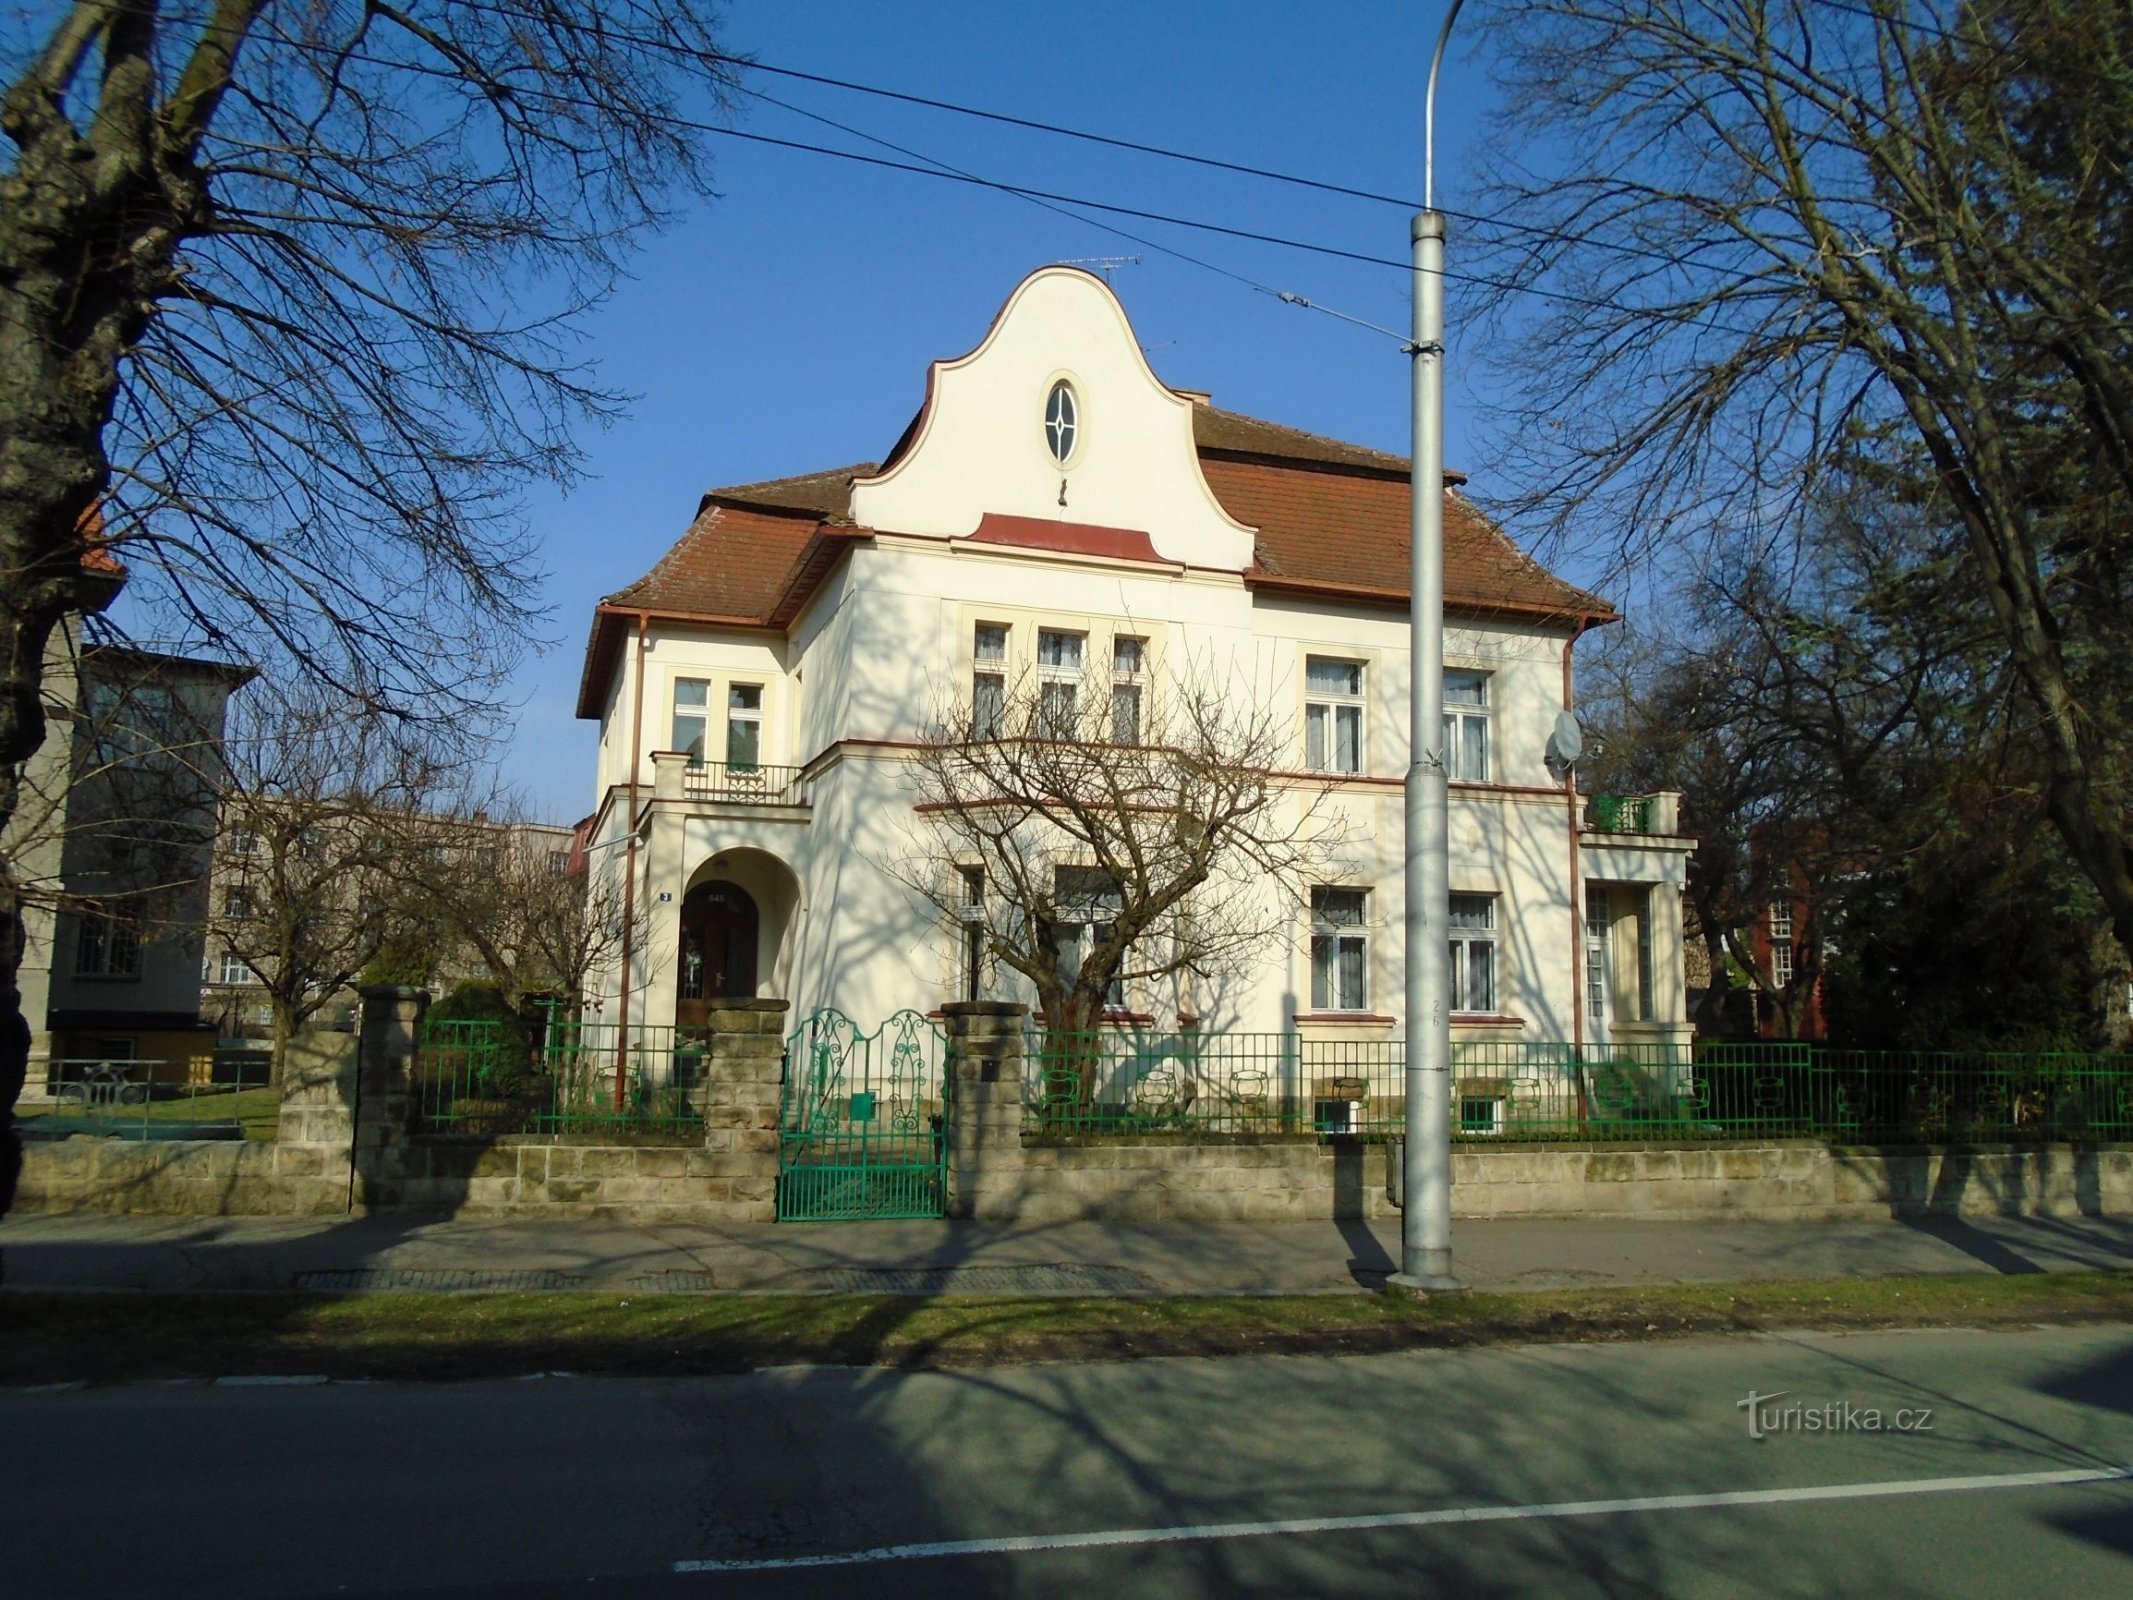 Castle No. 545 (Hradec Králové, 1.4.2018 April XNUMX)